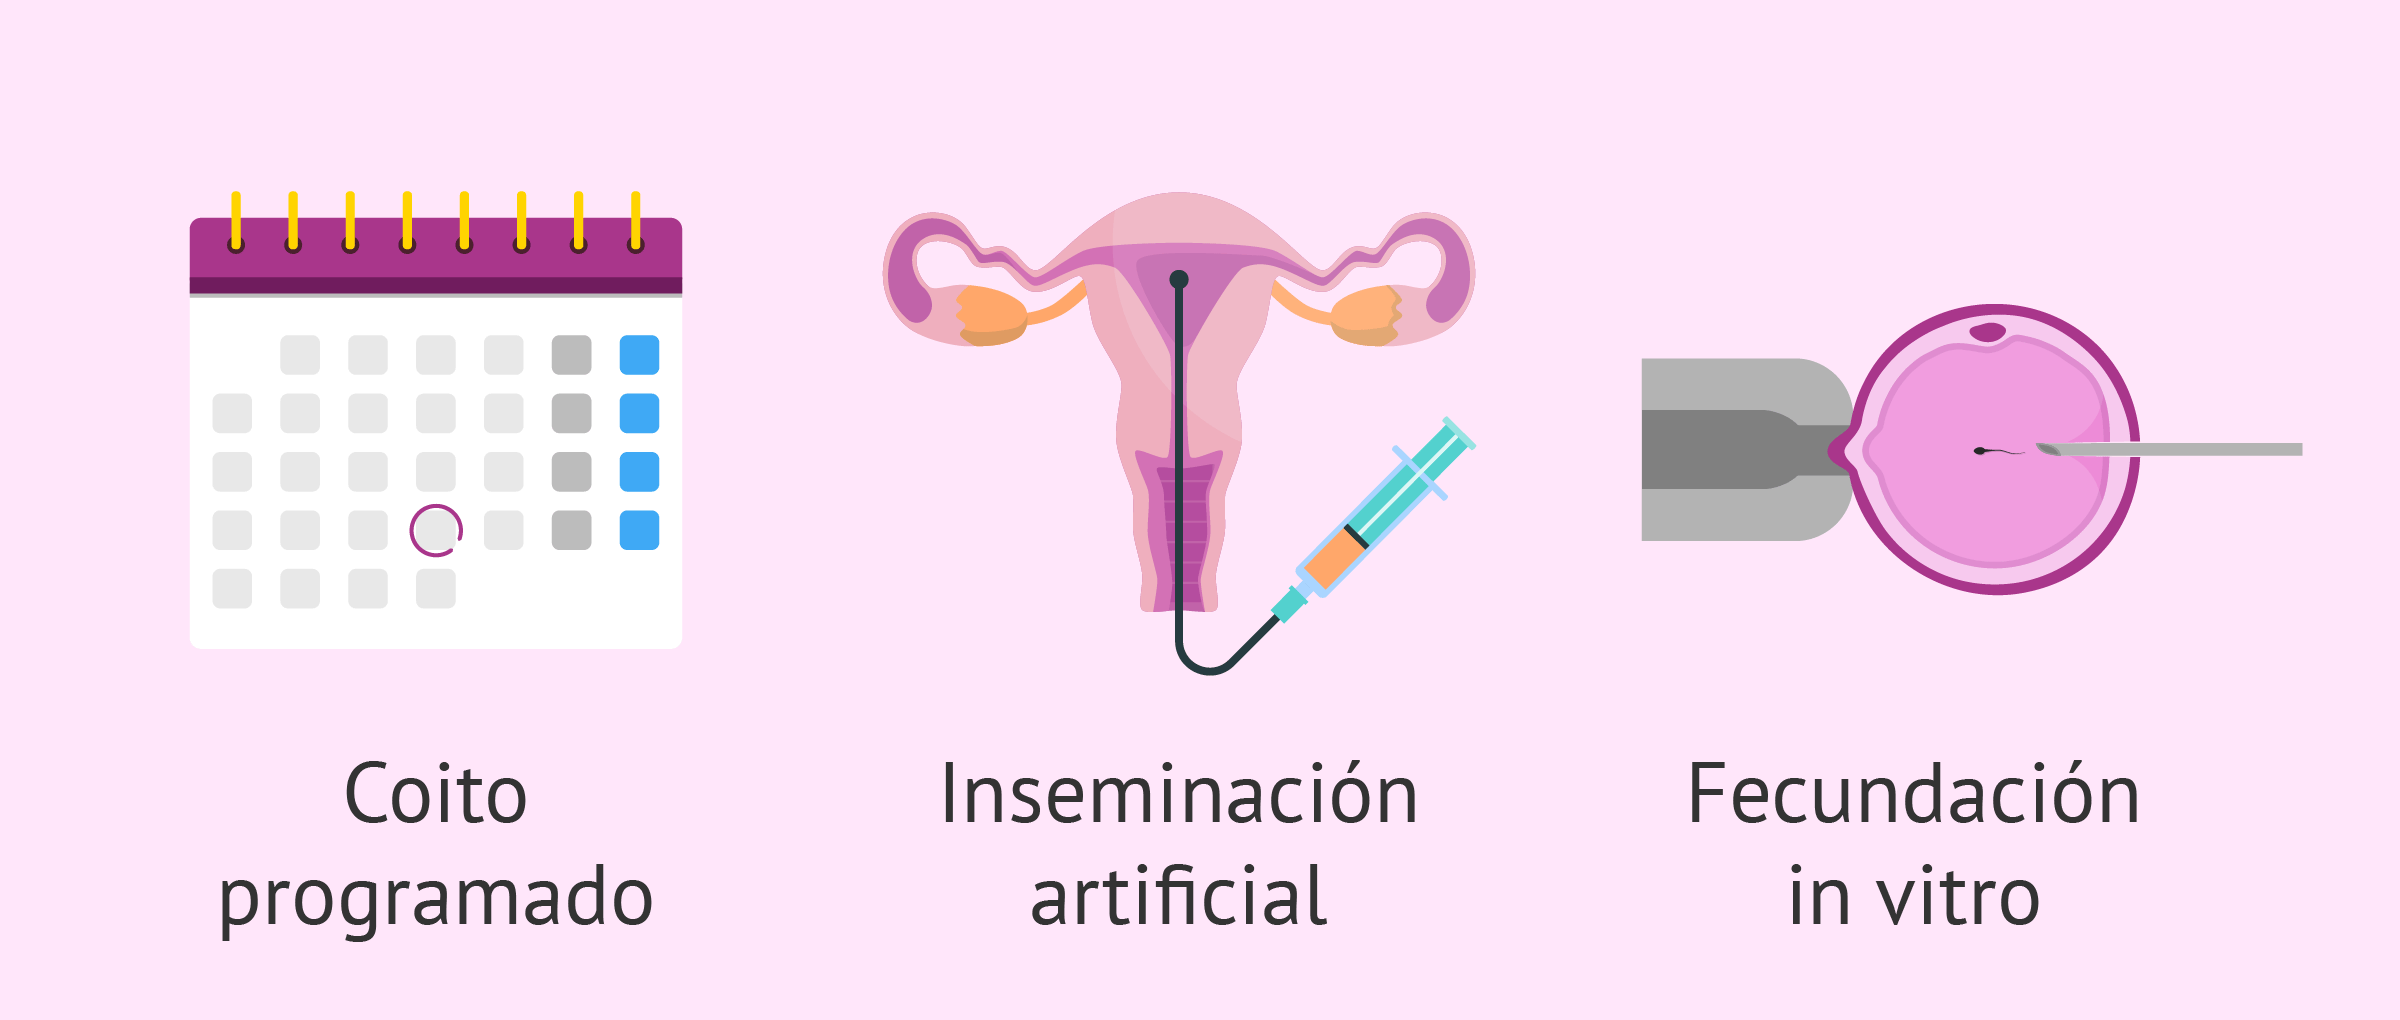 Tratamiento de la infertilidad femenina